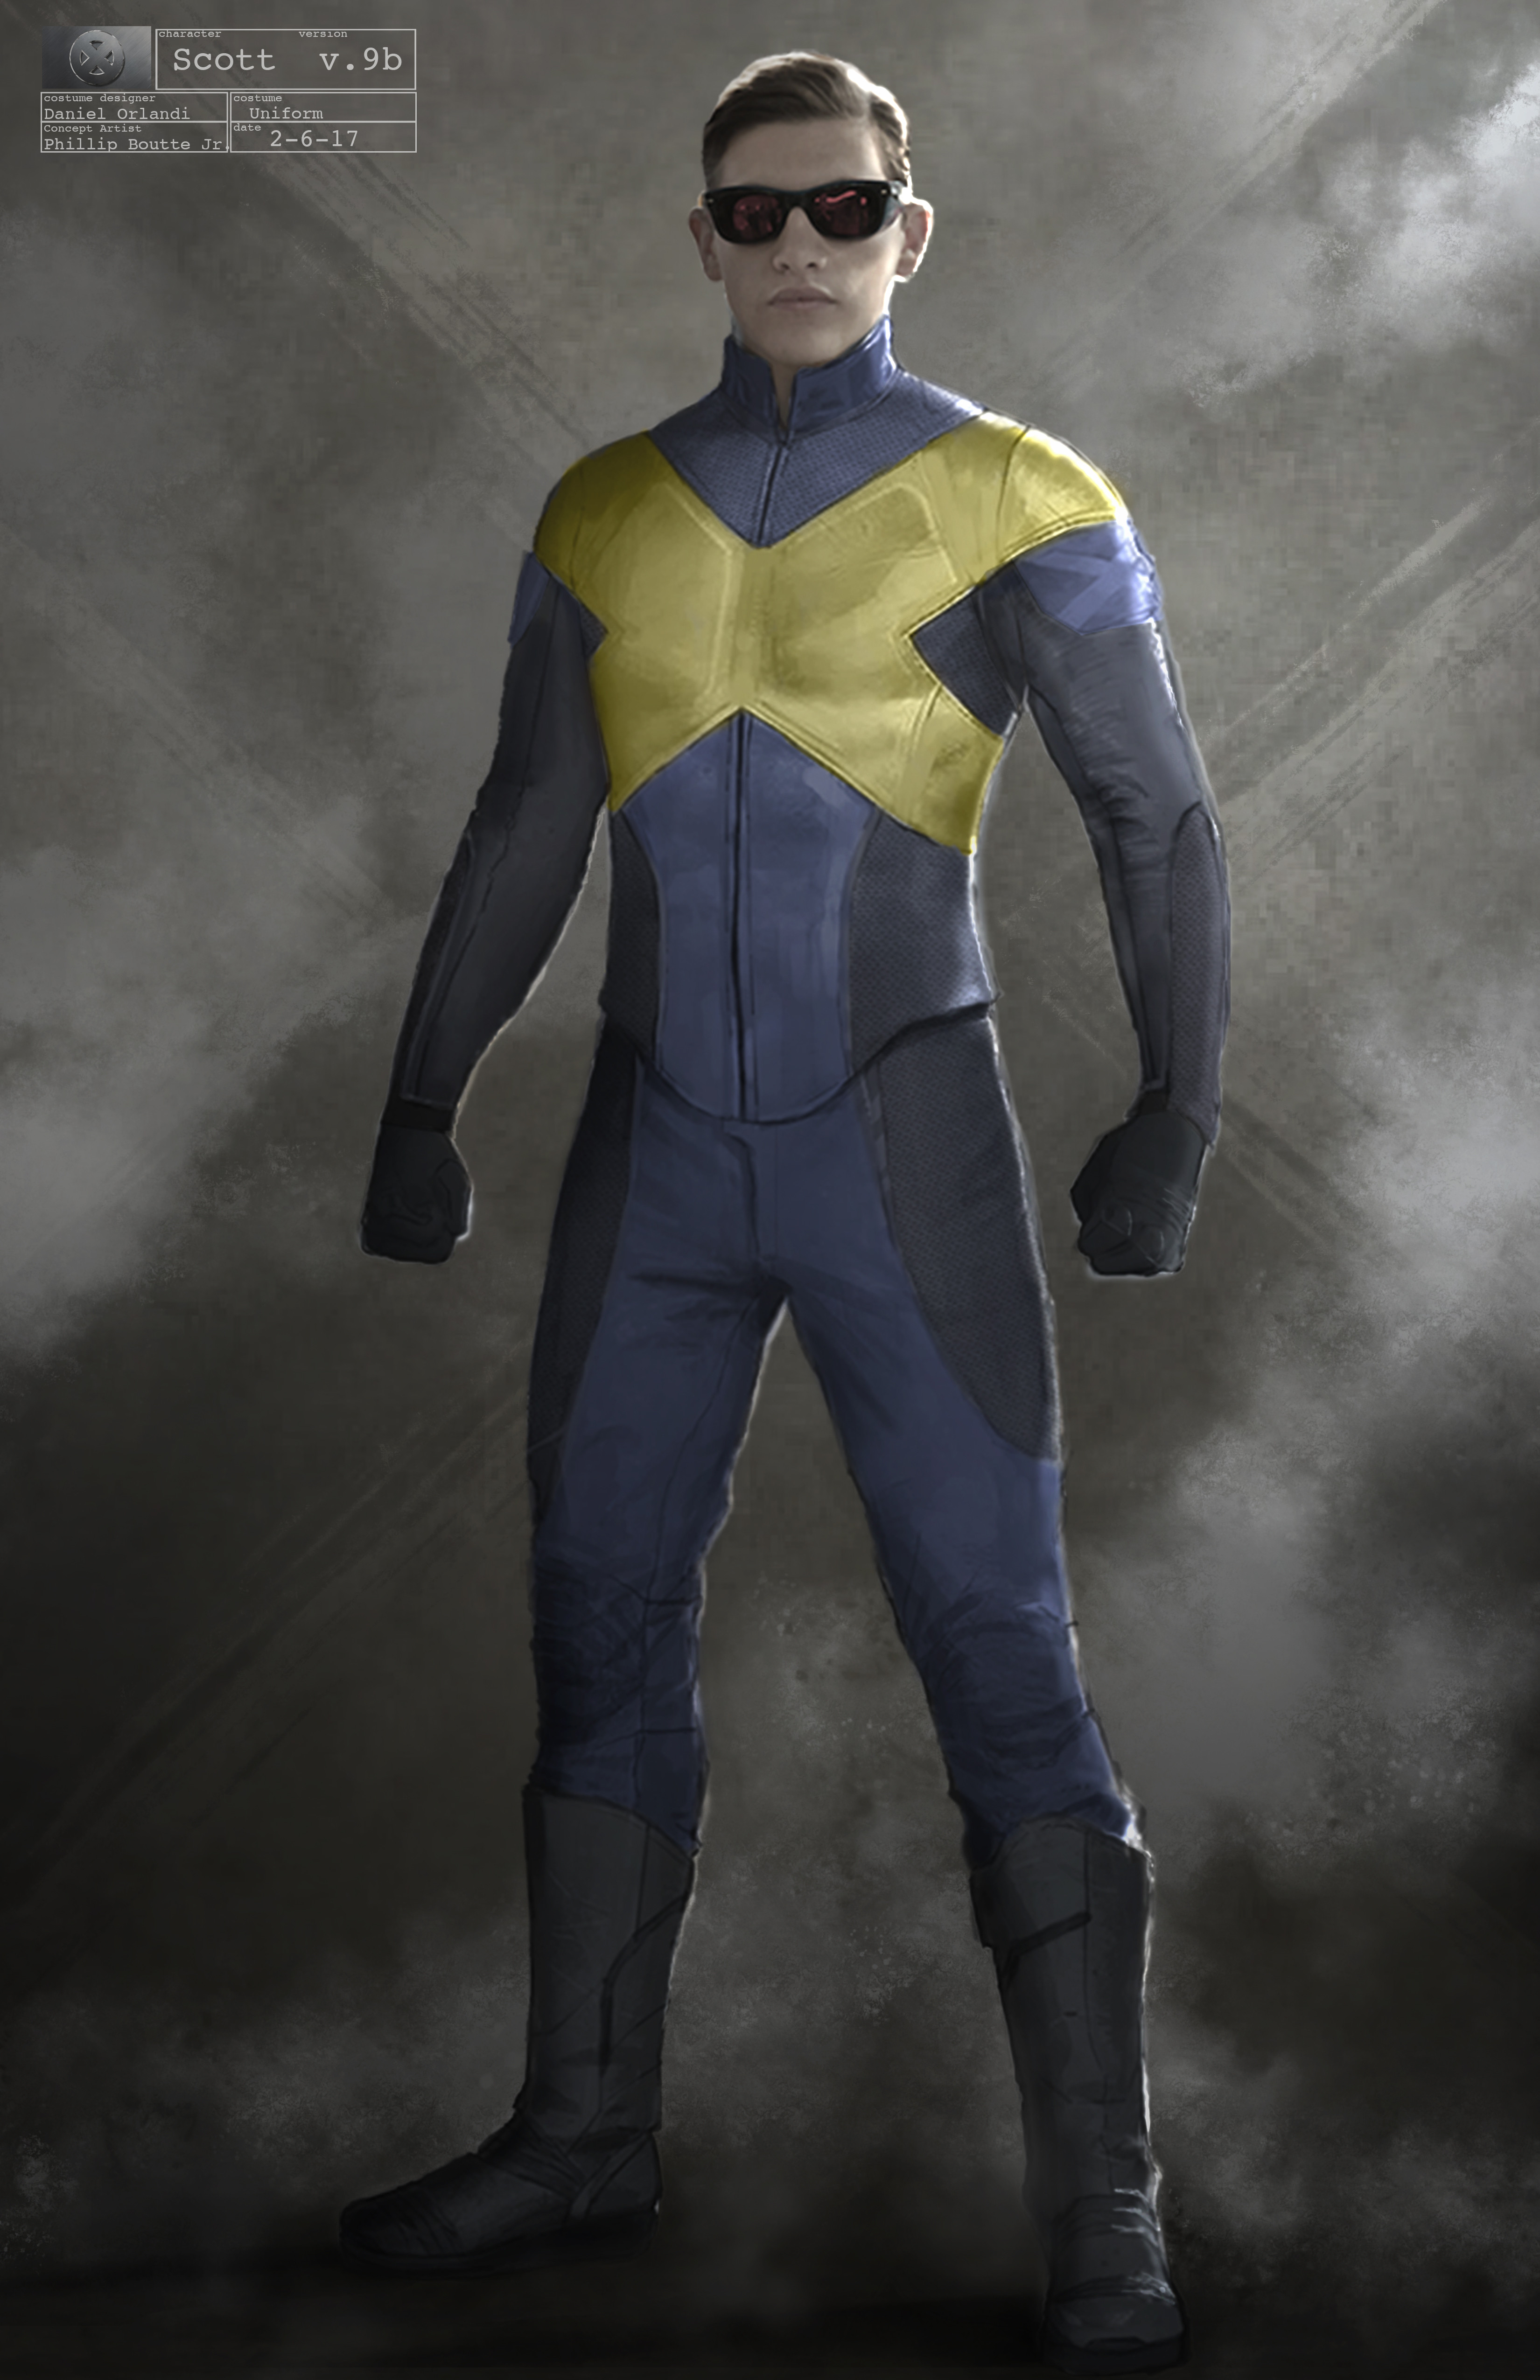 Phillip Boutte Jr. - X-Men Dark Phoenix: Scott Summers (Cyclops)